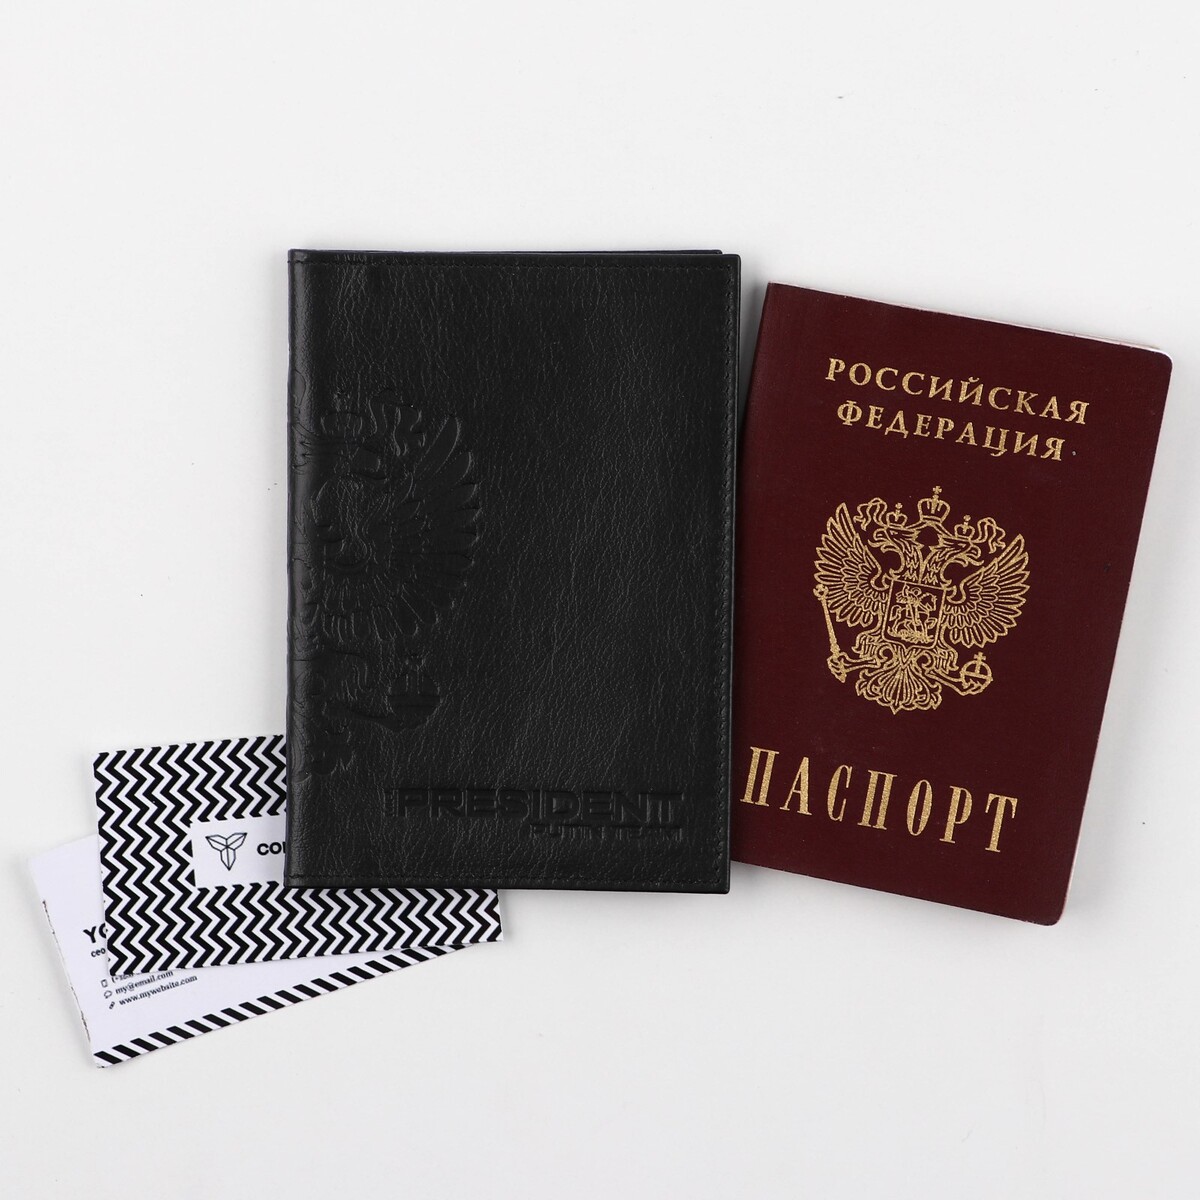 Обложка для паспорта 5131 russia, цвет черный, натуральная кожа